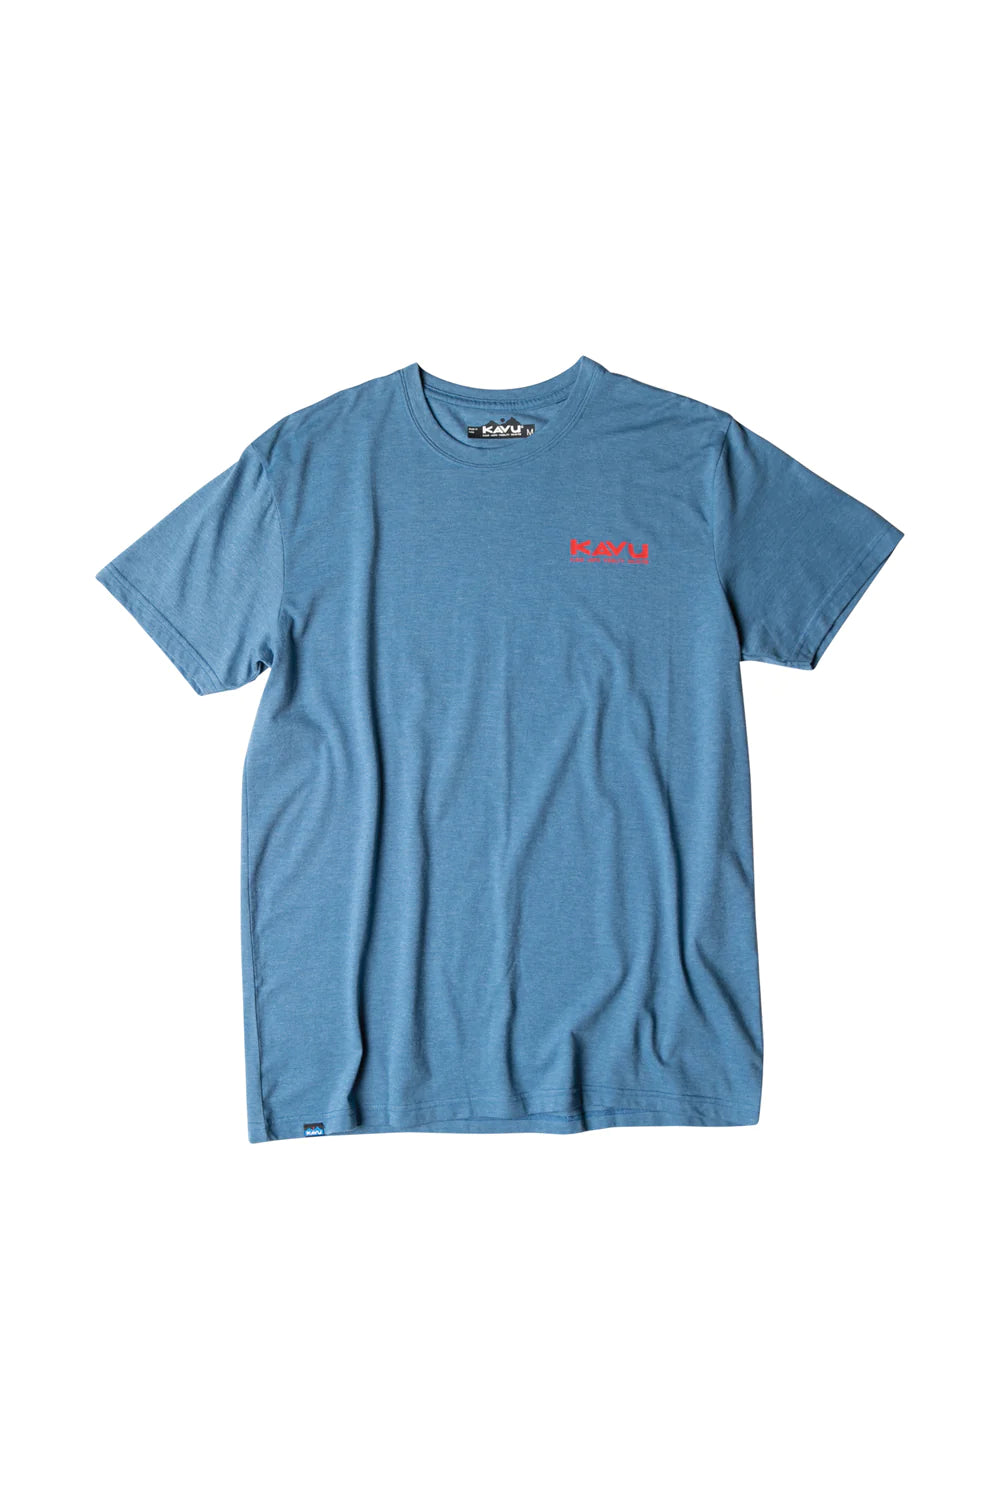 Kavu - T-Shirt Post Out Steel Blue